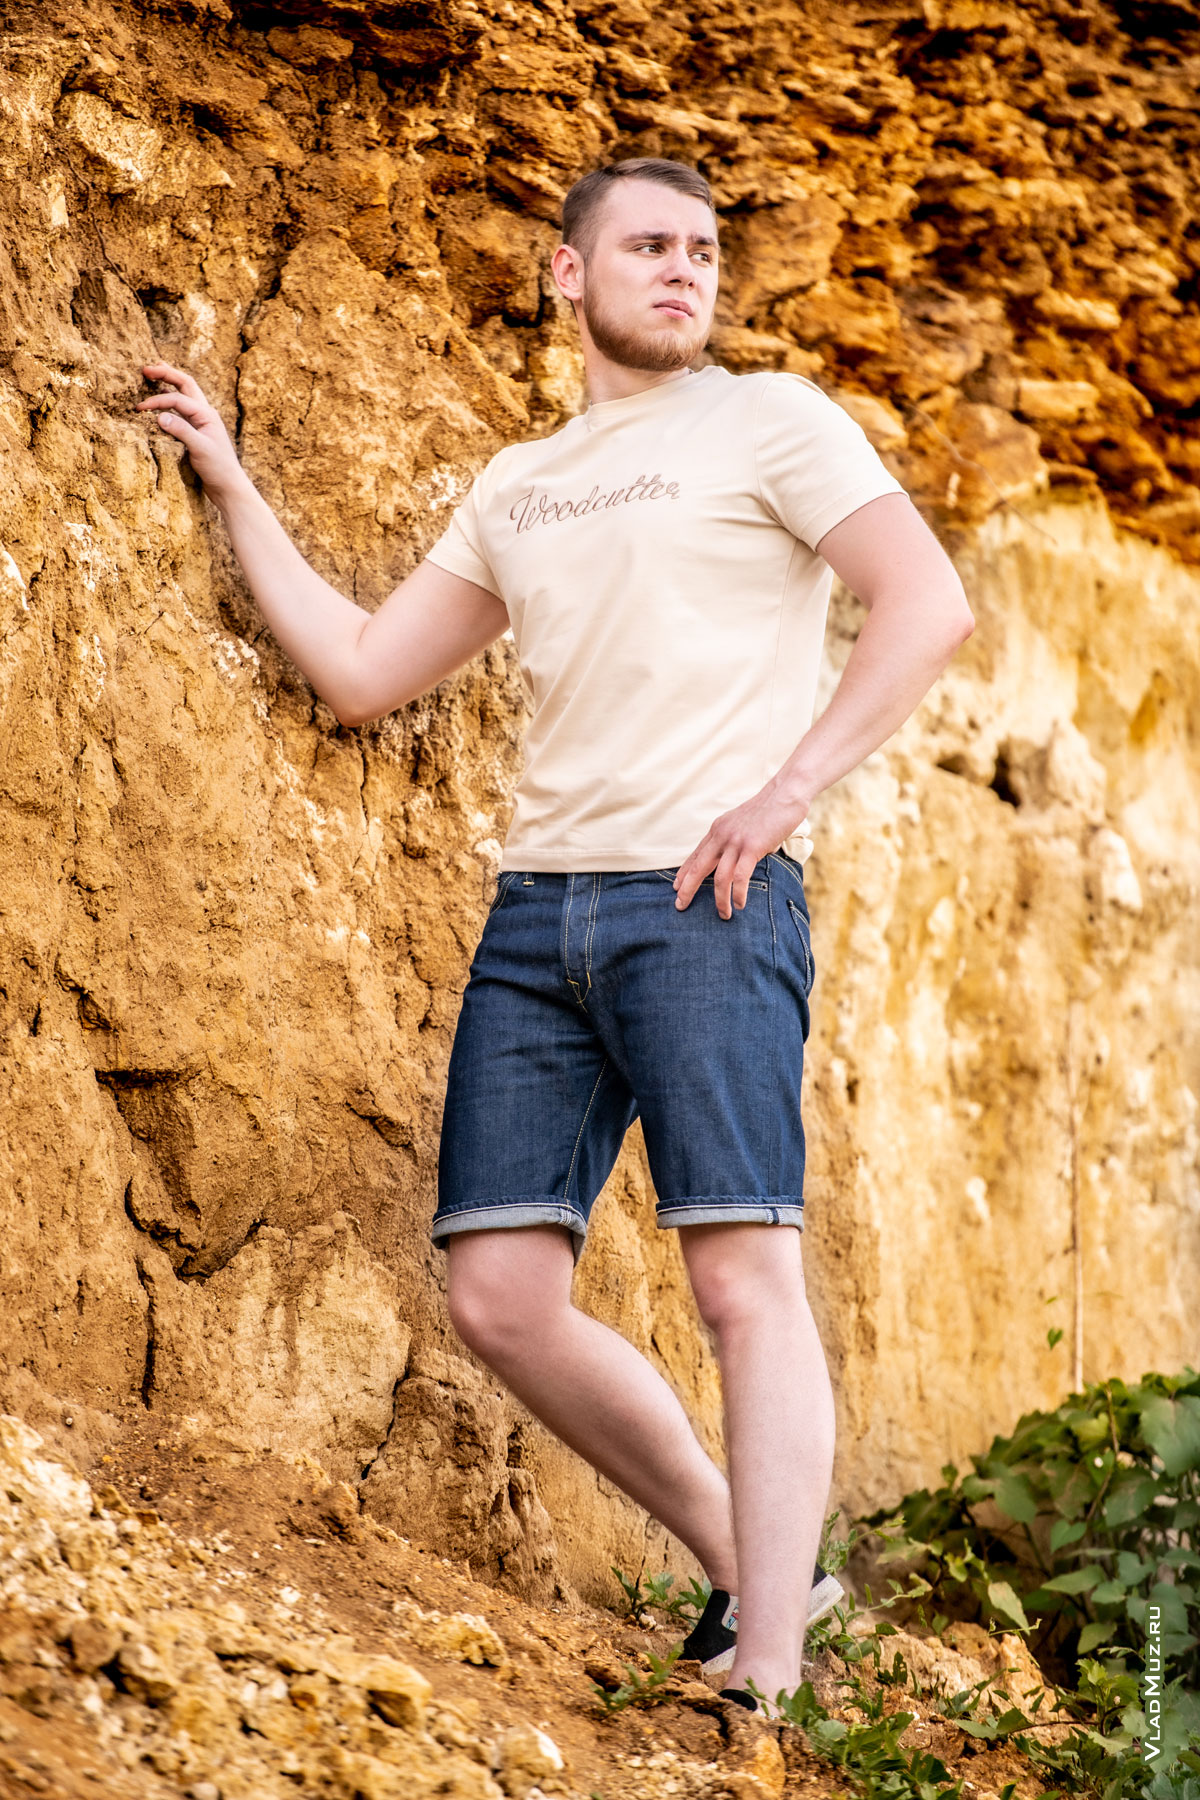 Фото мужчины в полный рост в шортах и светло-бежевой футболке Woodcutter на фоне карьера